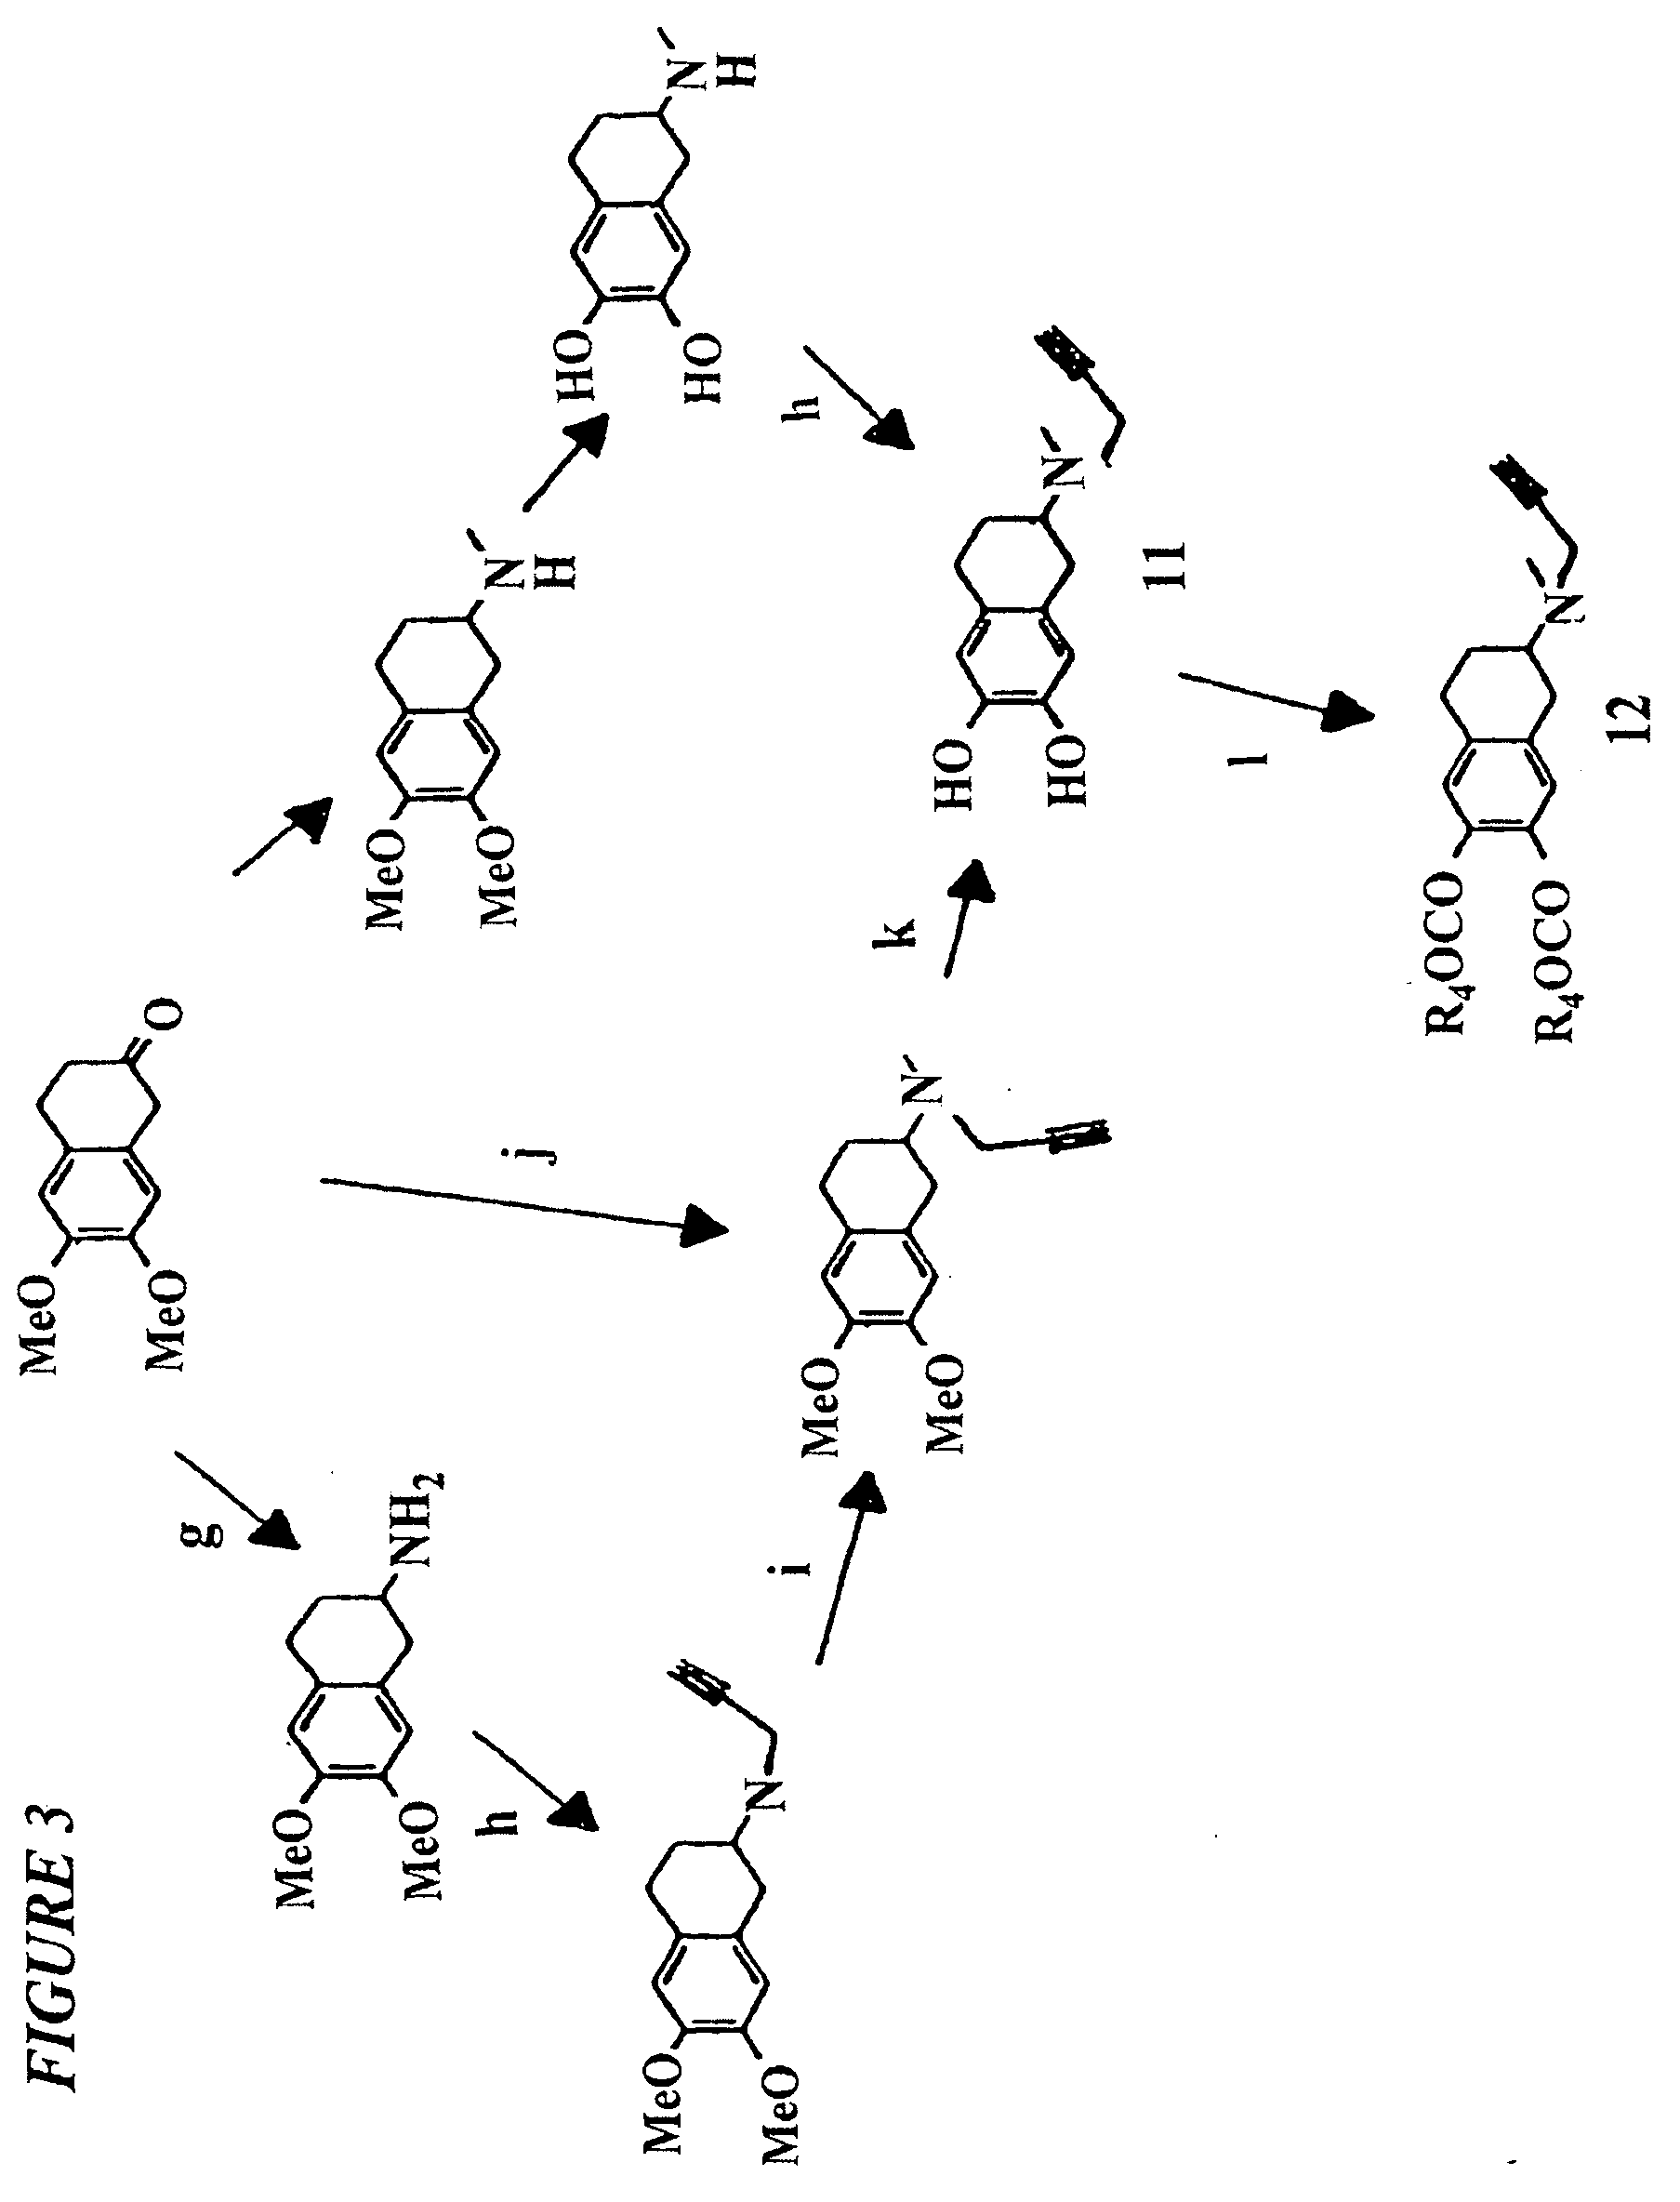 Propargylamino indan derivatives and propargylamino tetralin derivatives as brain-selective mao inhibitors